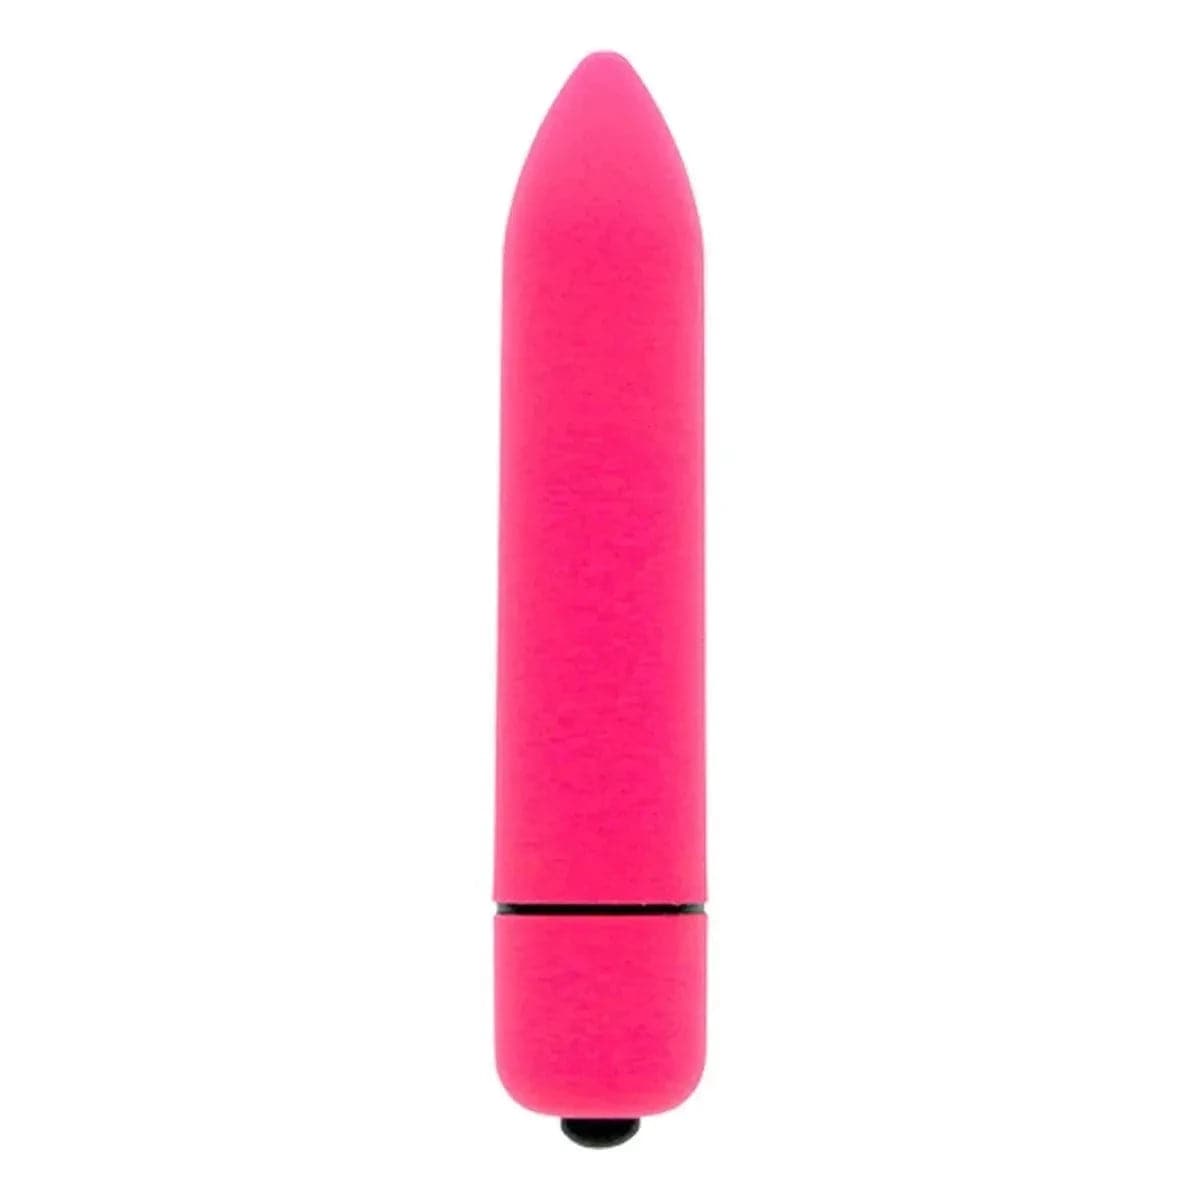 Bala Vibratória Climax Bullet Rosa, 9cm Ø1.7cm, 10vibrações - Pérola SexShop